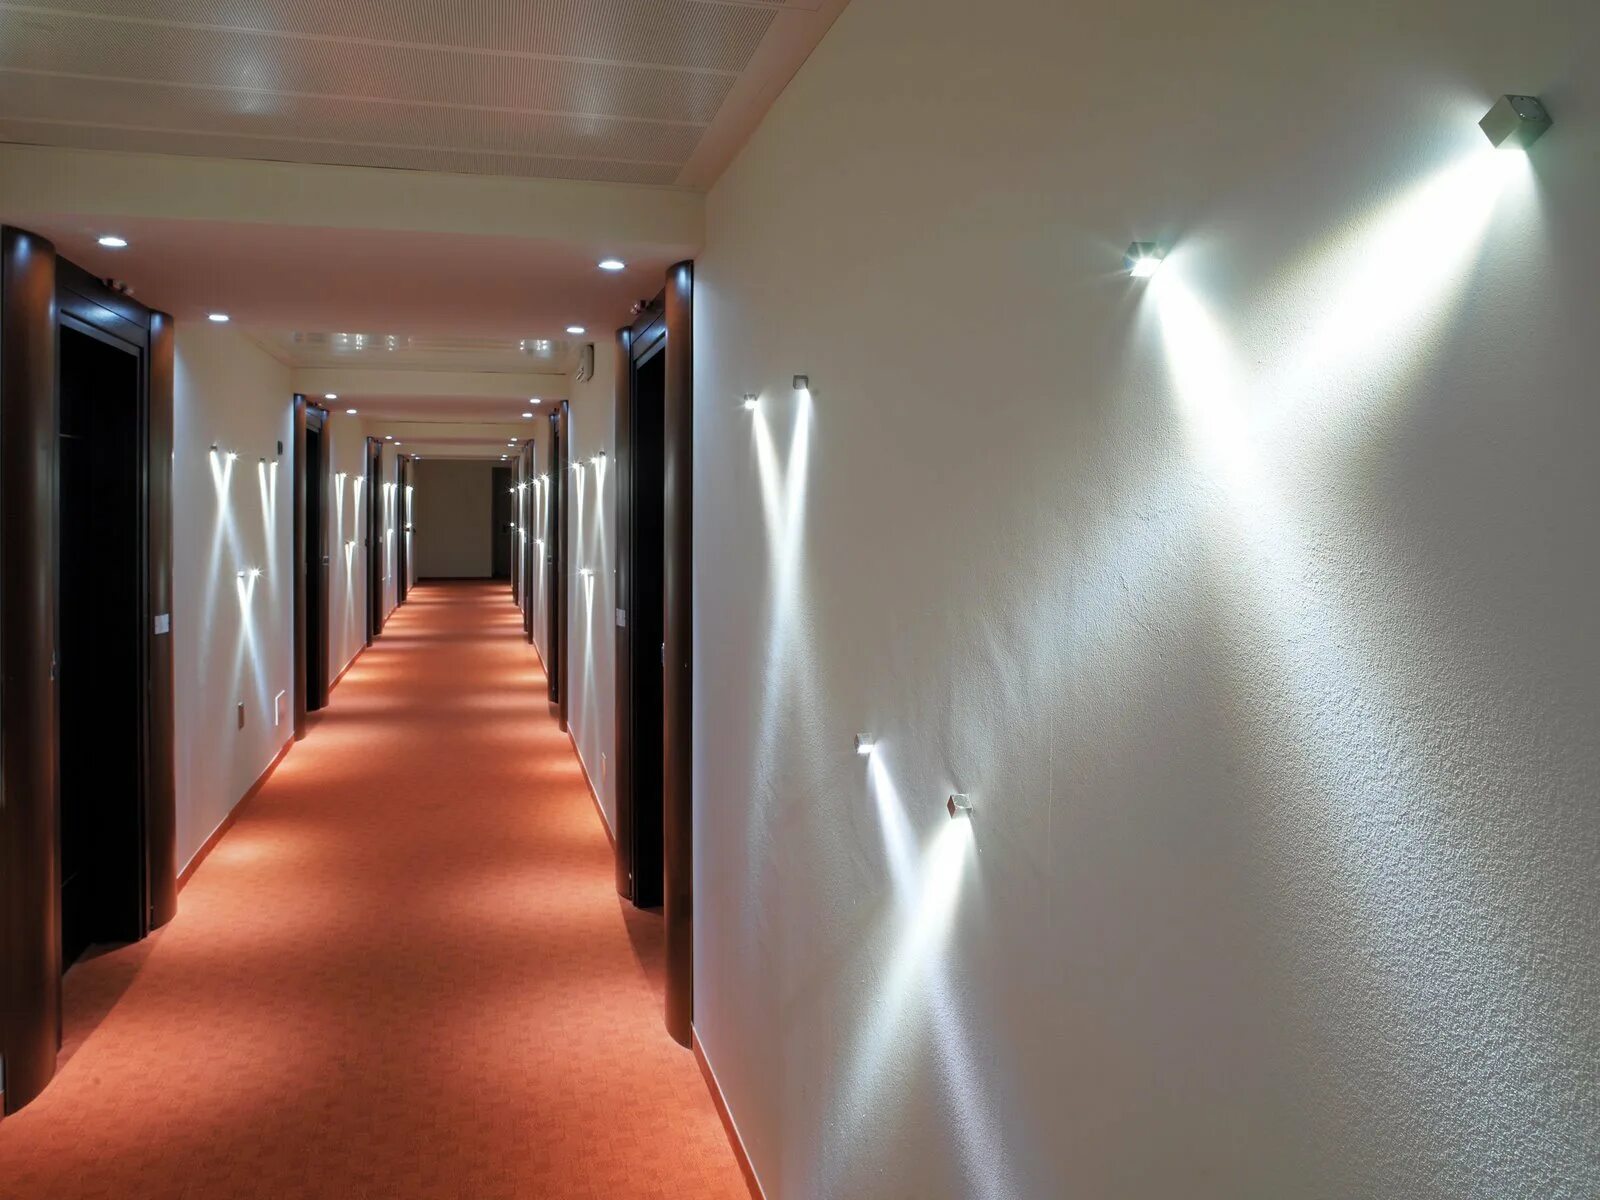 Свет яркий свет полон зал. Светильники в коридор. Освещение в коридоре. Светодиодная подсветка в коридоре. Декоративная подсветка на стену.